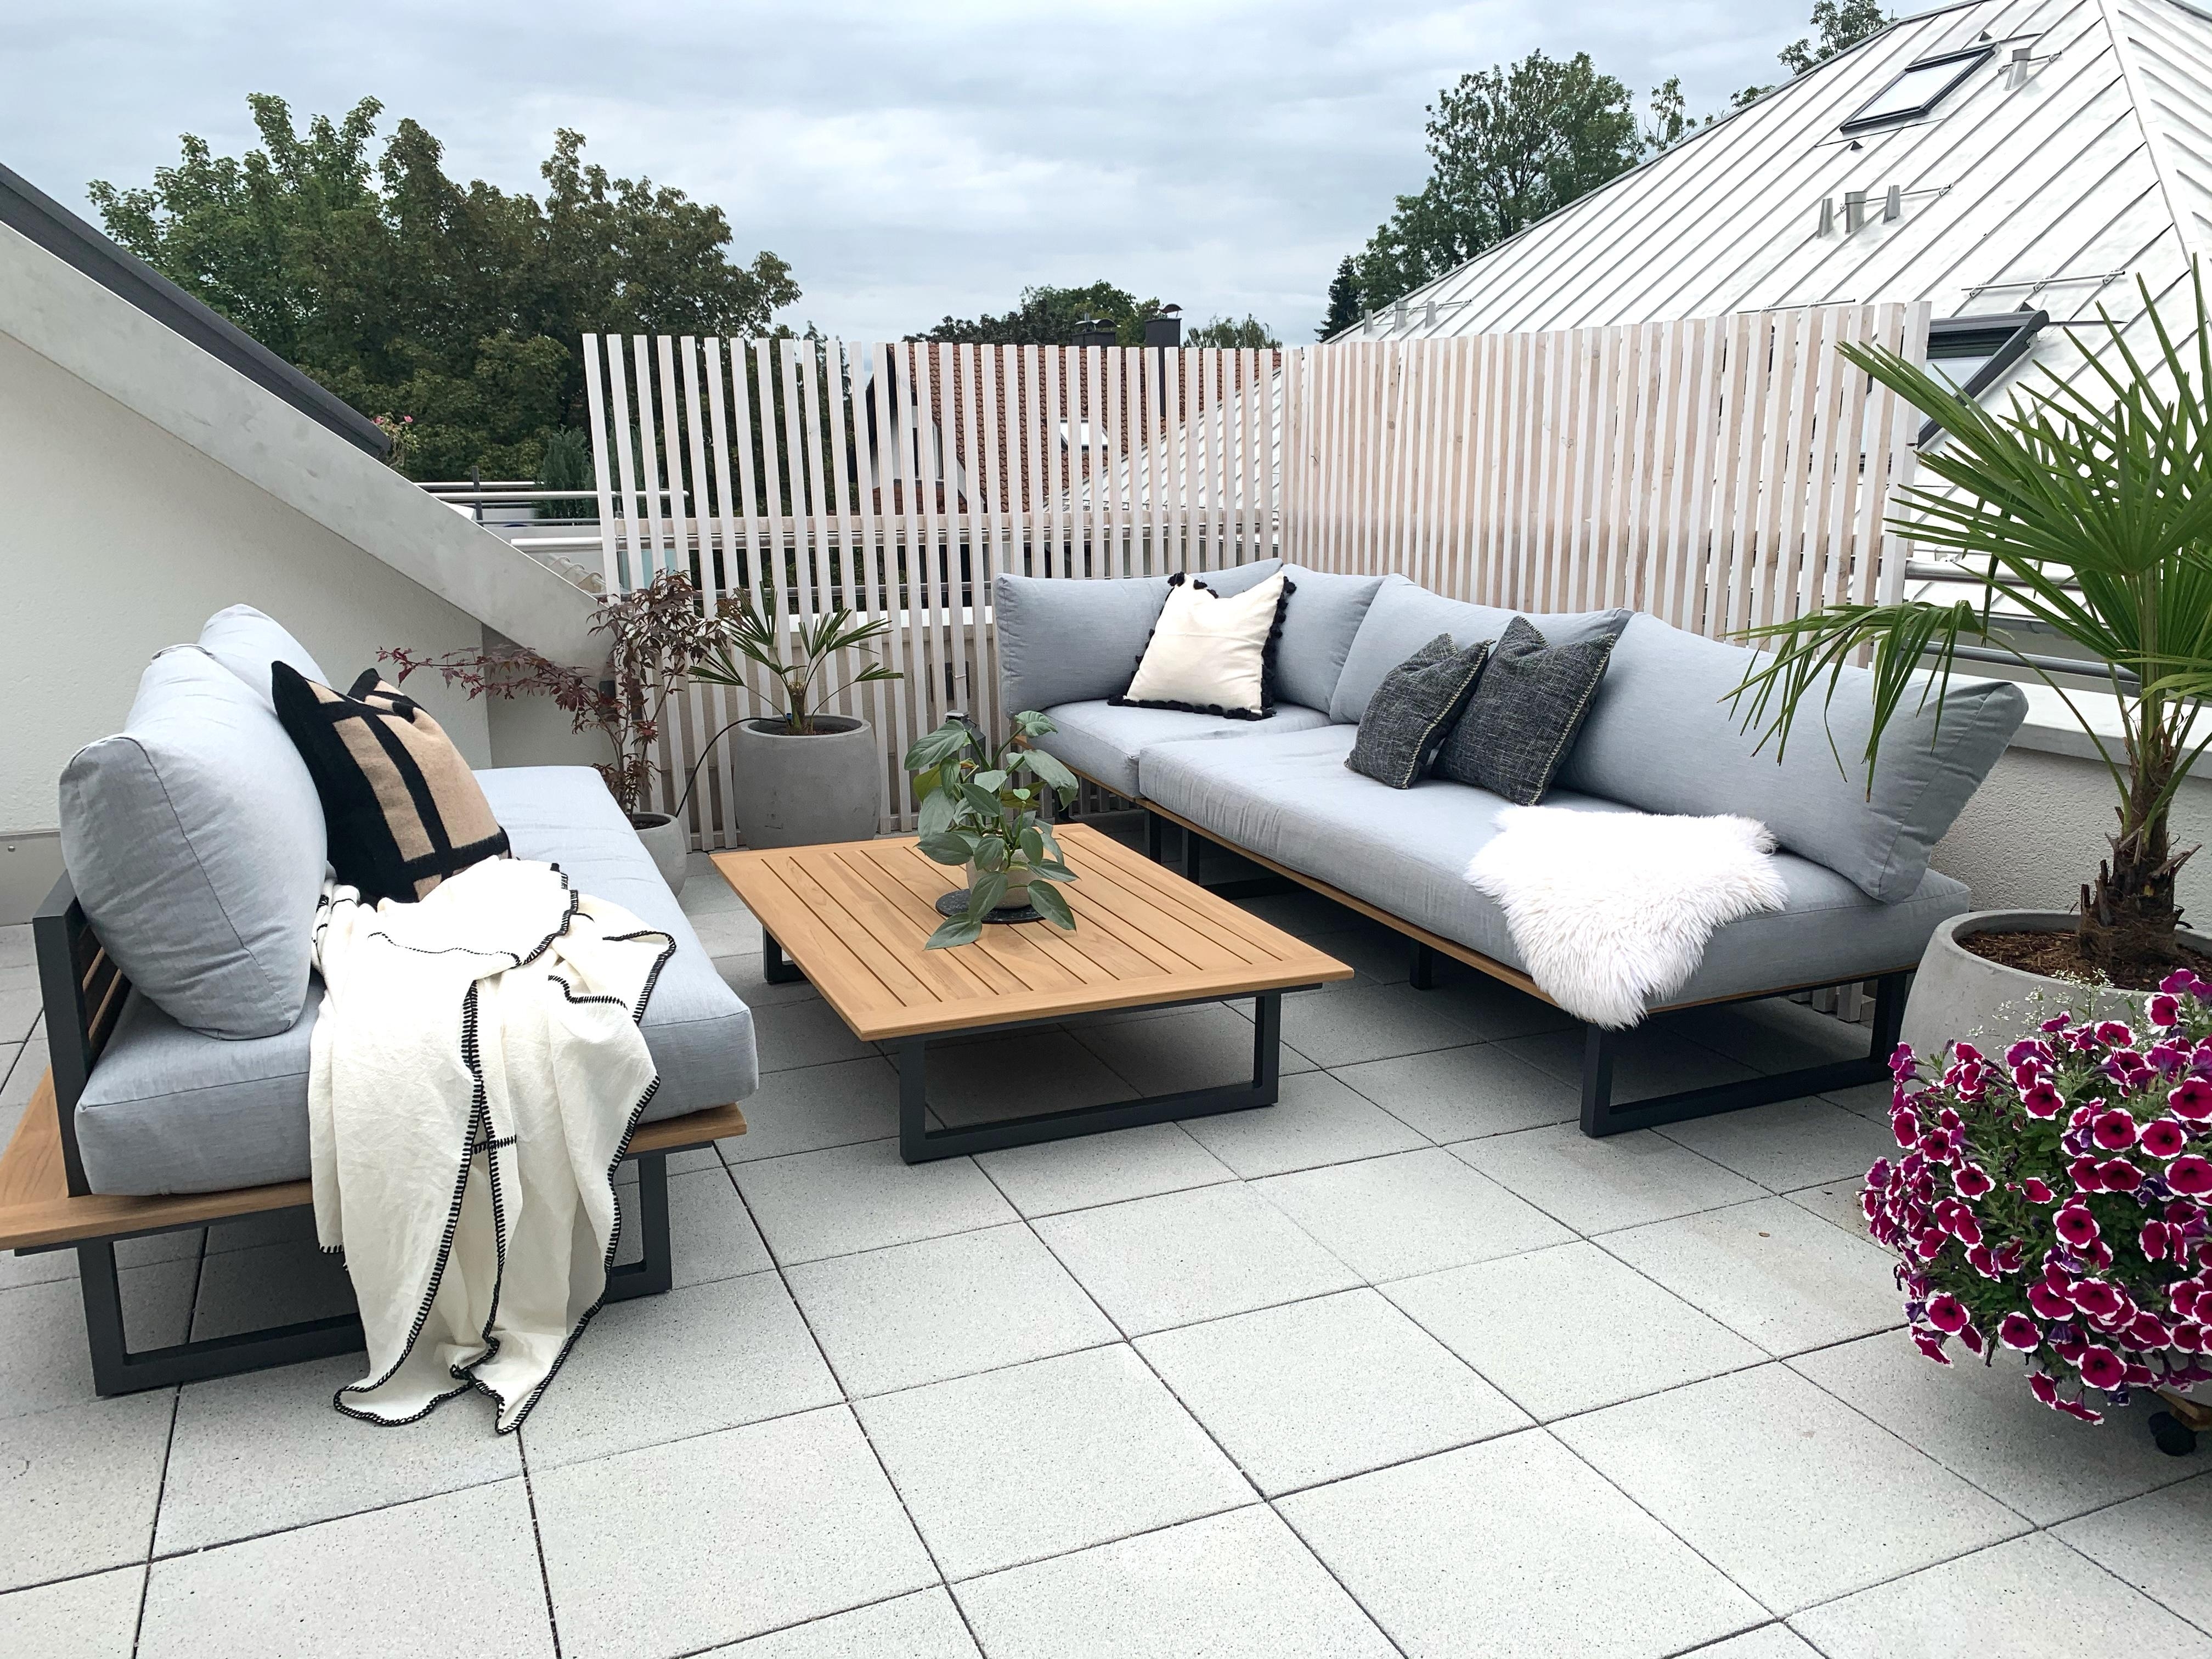 Unsere Loungeecke auf der Terrasse ☀️ #Dachterrasse #Terrasse #Lounge #Outdoor #Outdoorliving #interiort #interiorinspo